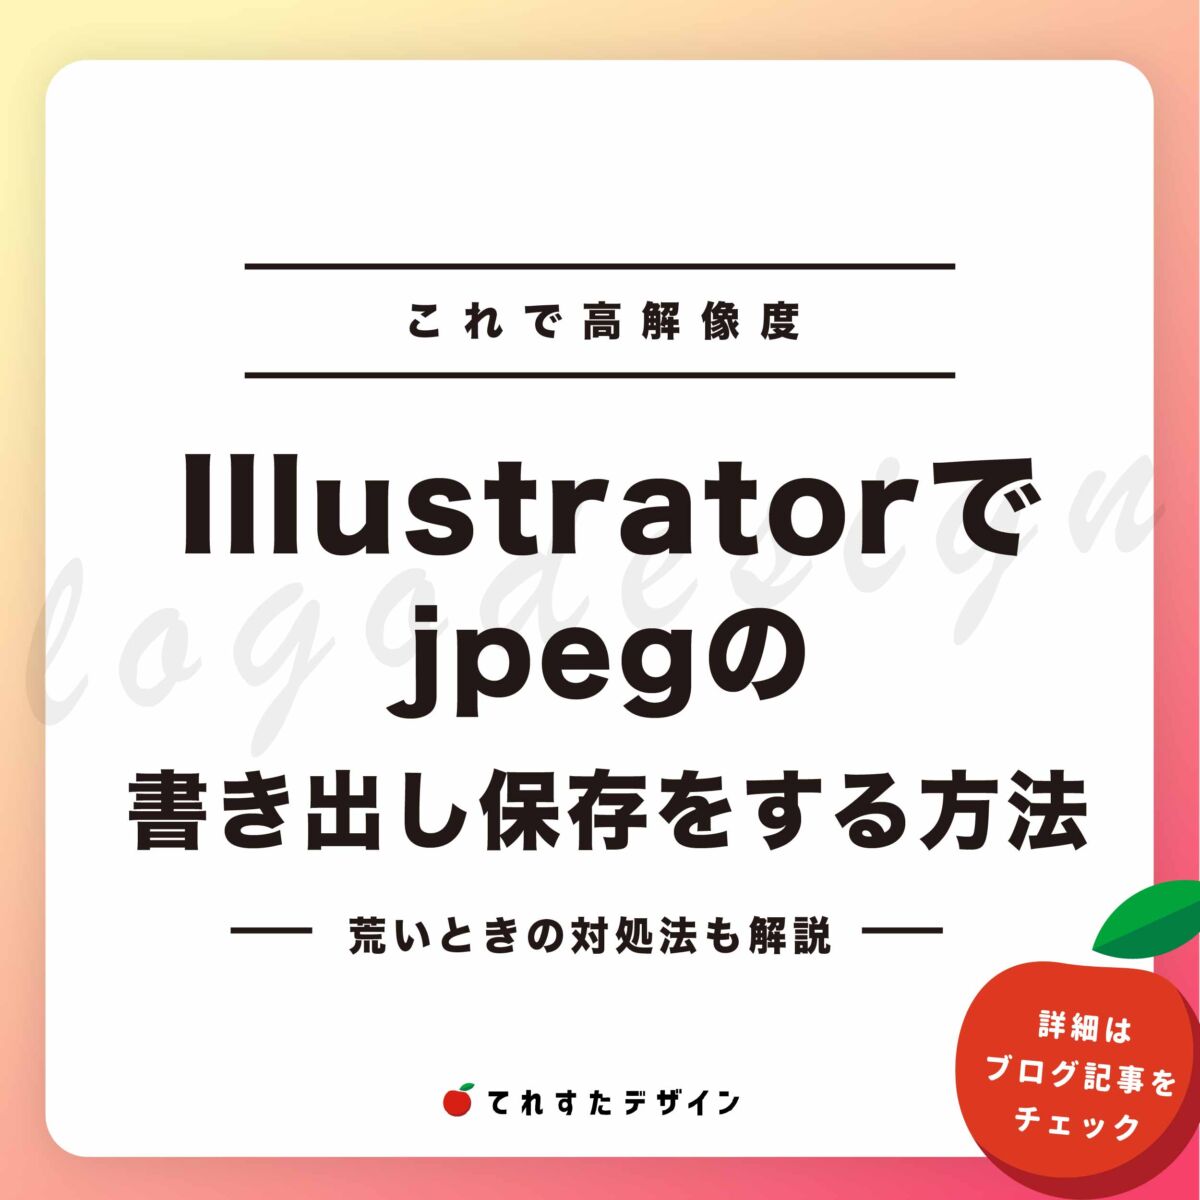 【これで高画質に】Illustratorでjpegの書き出し保存をする方法